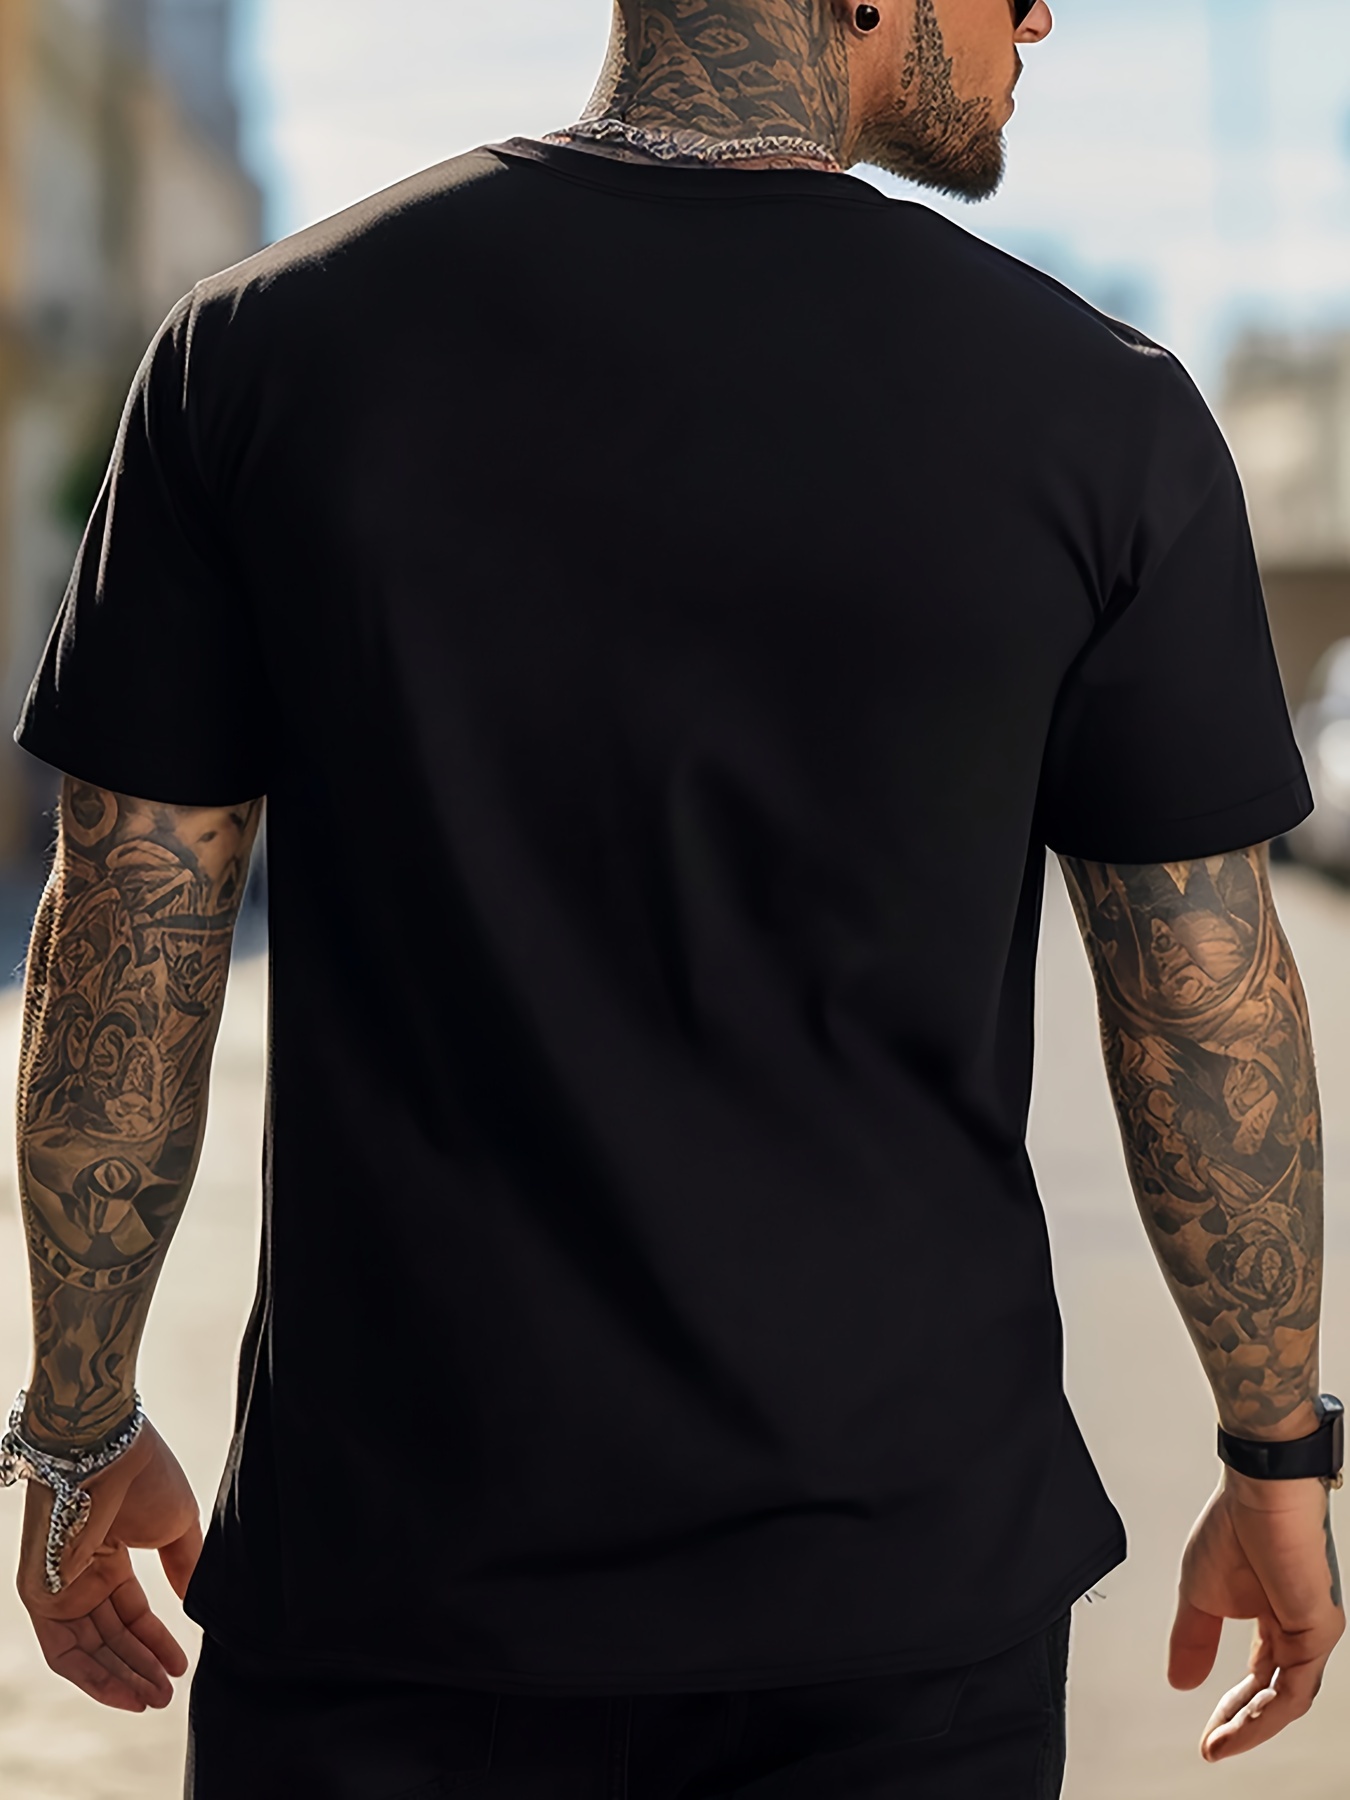 CALIFORNIA プリント T シャツ メンズ Tシャツ 夏用カジュアル半袖 T シャツ - Temu Japan